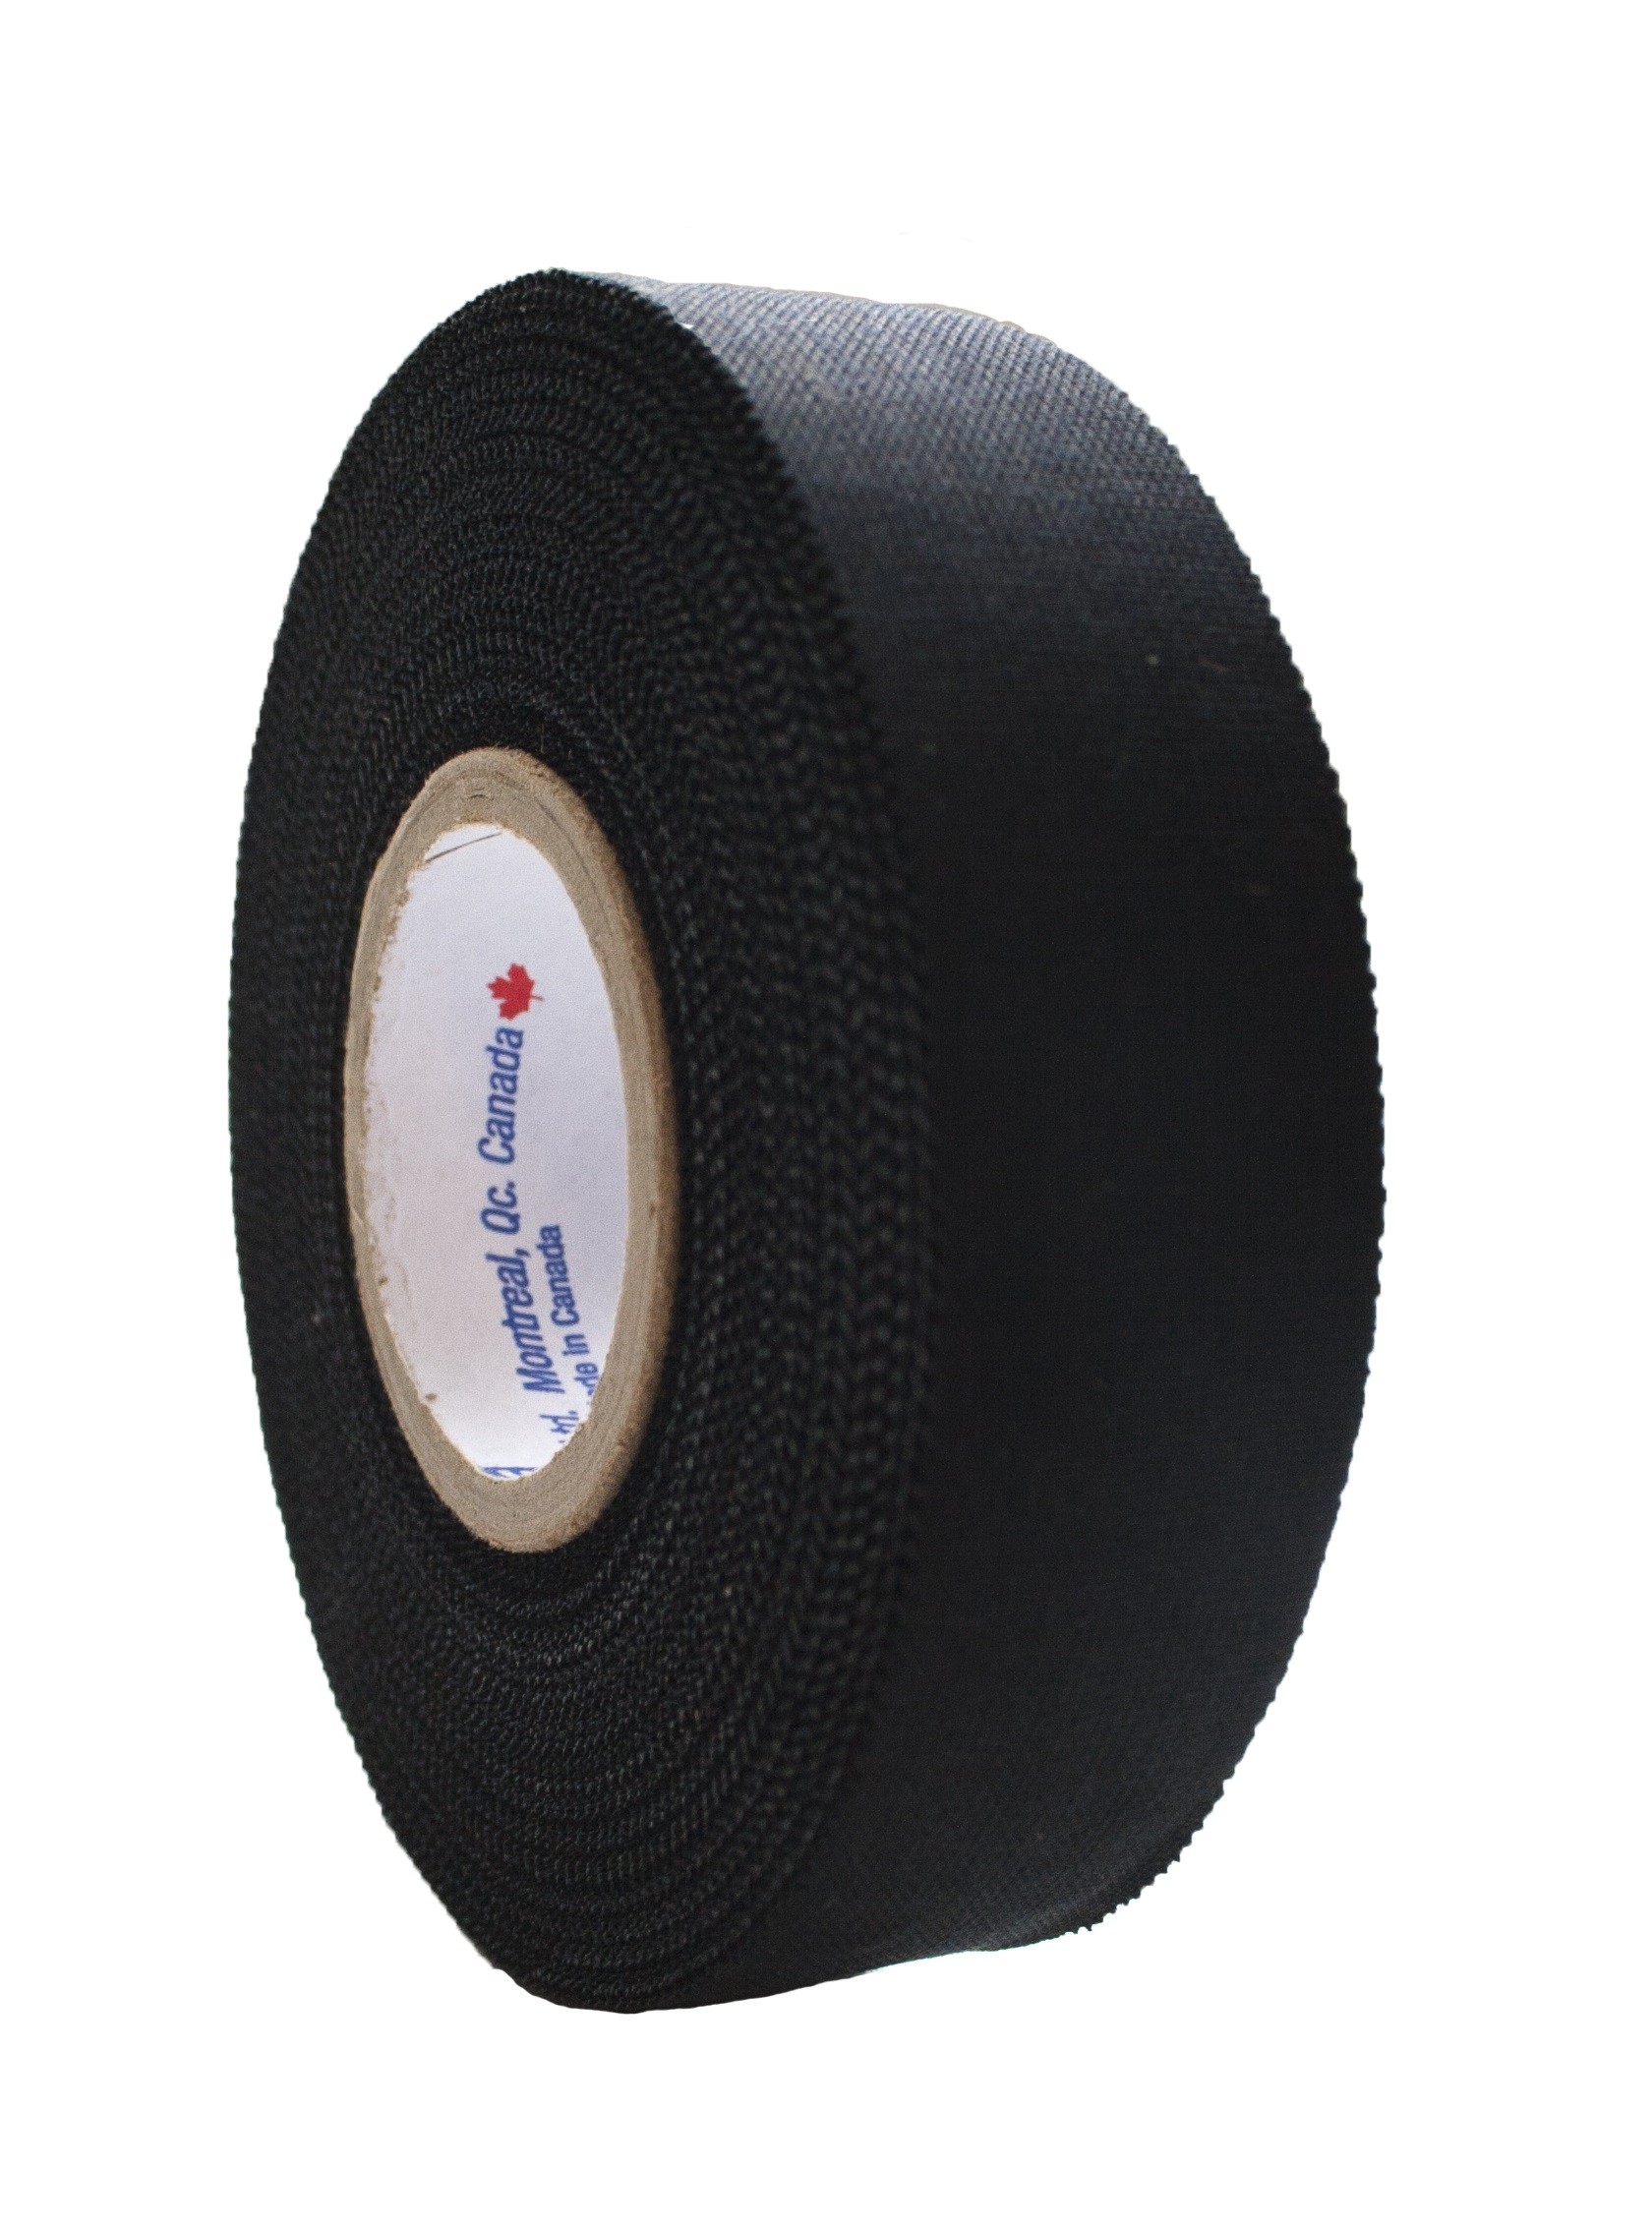 SPORTSTAPE Standart Hockey Stick Tape Black